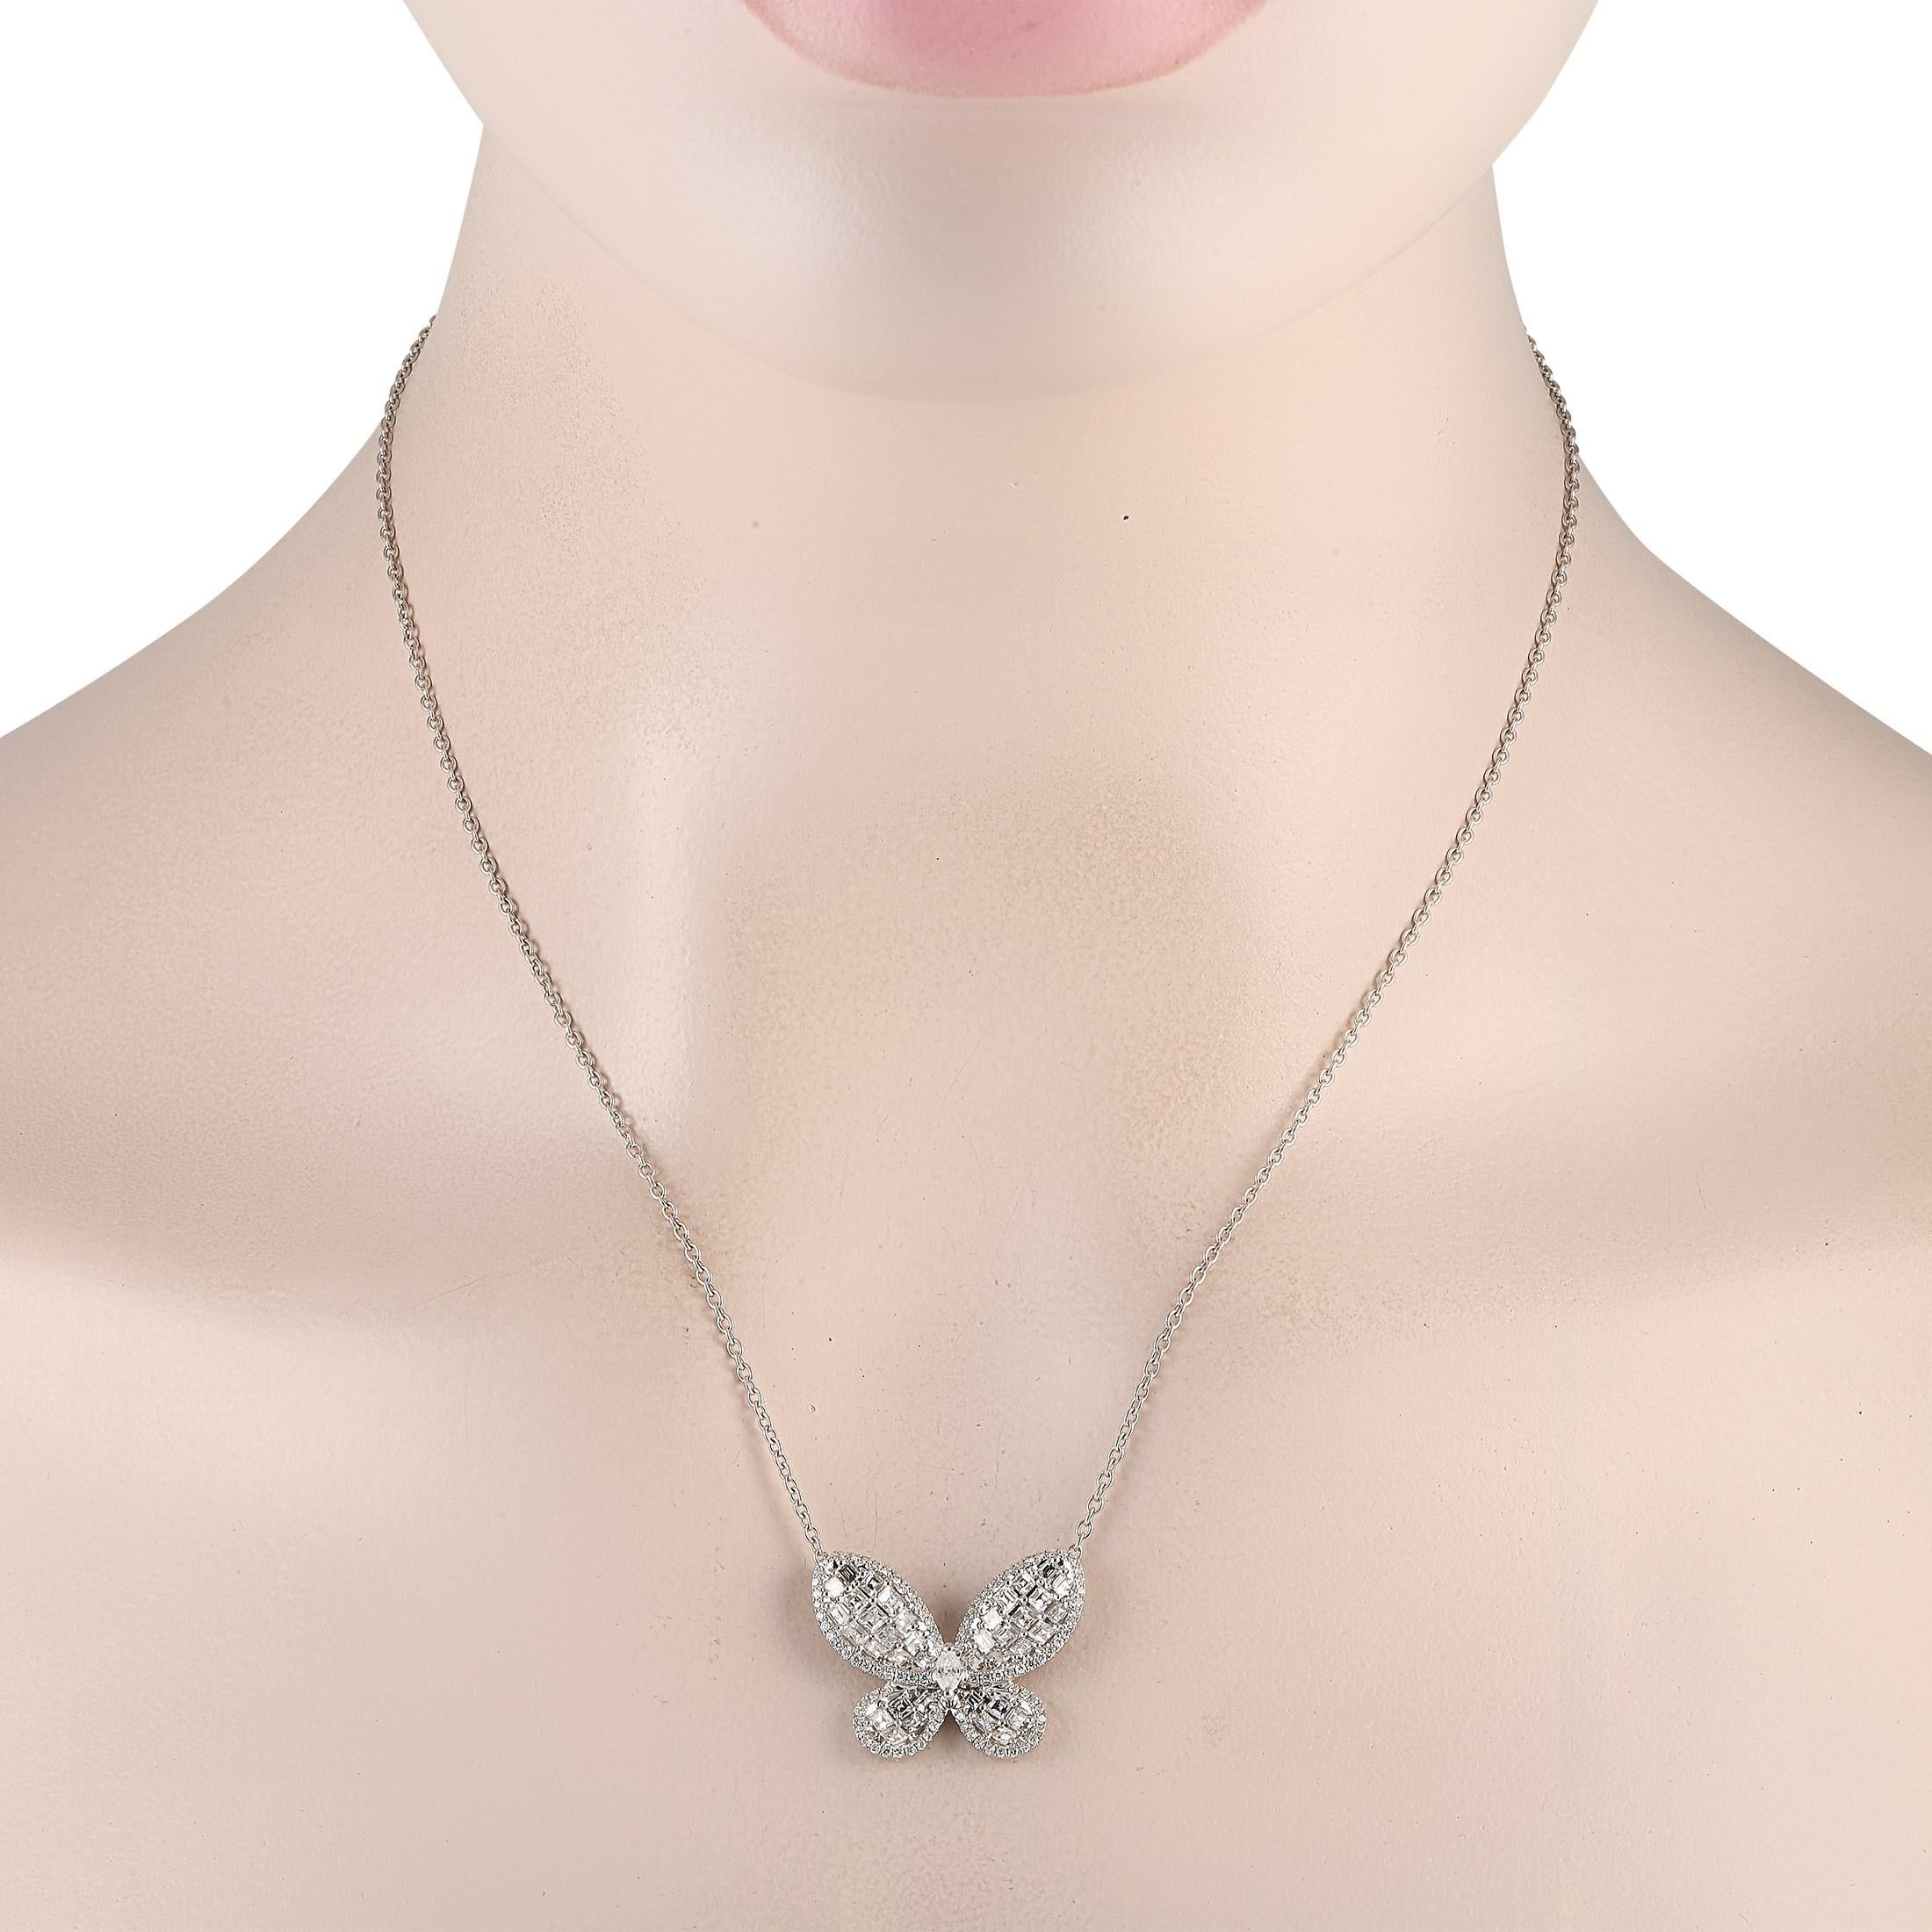 Symbole de transformation, ce collier en or blanc avec un pendentif papillon incrusté de diamants offre une déclaration de style significative. Vous adorerez la façon dont les diamants ronds et carrés reflètent la lumière, apportant un peu de joie